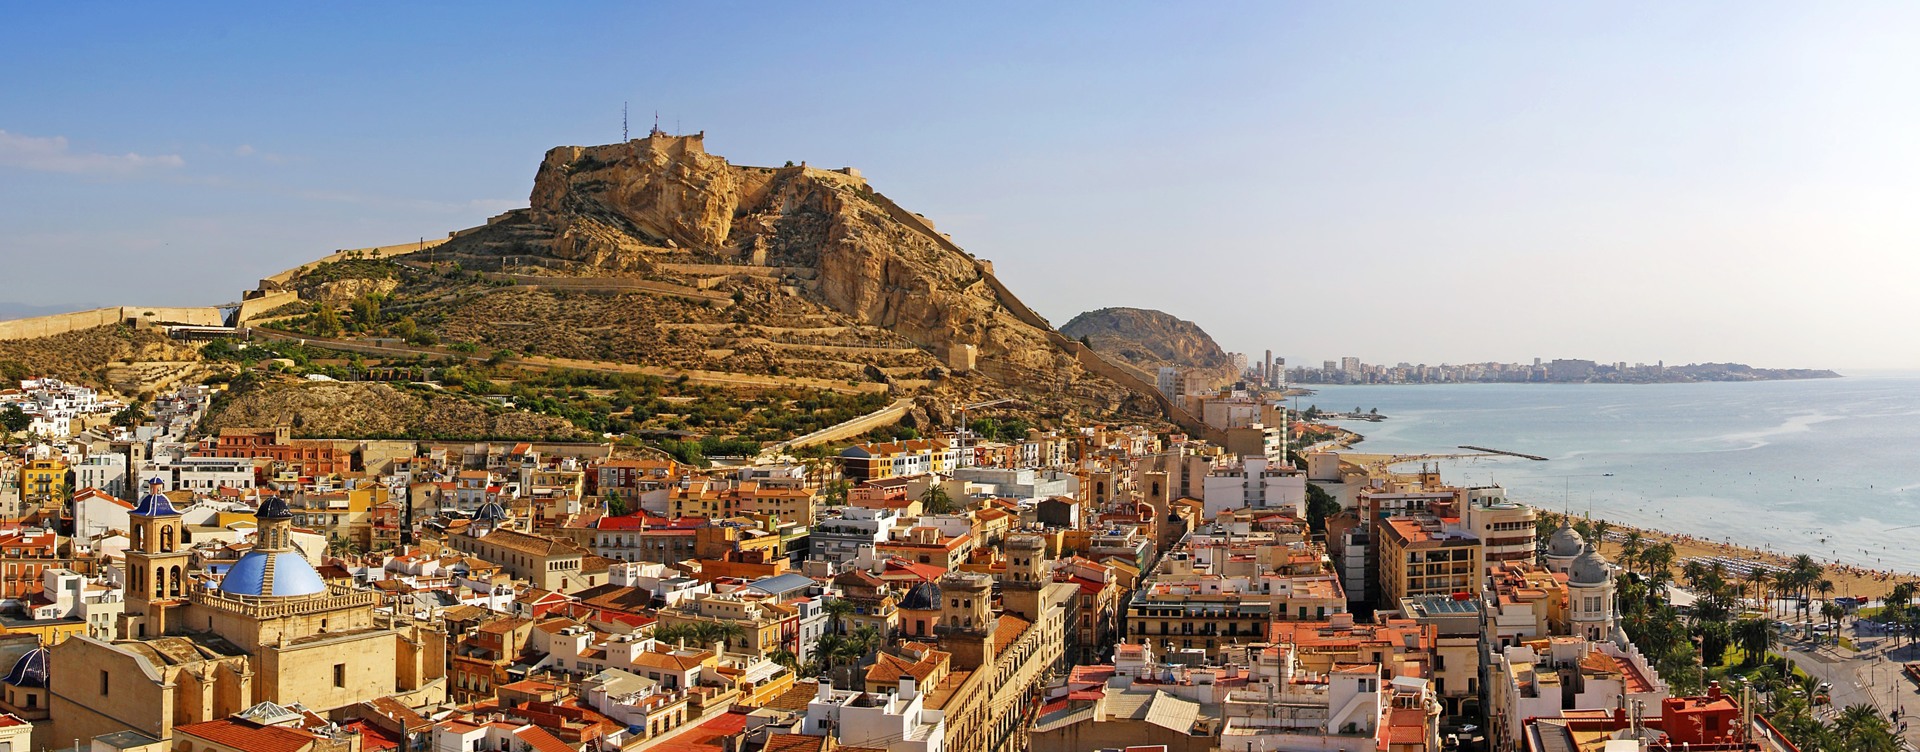 Explorer le centre-ville animé d’Alicante
et visiter les sites touristiques